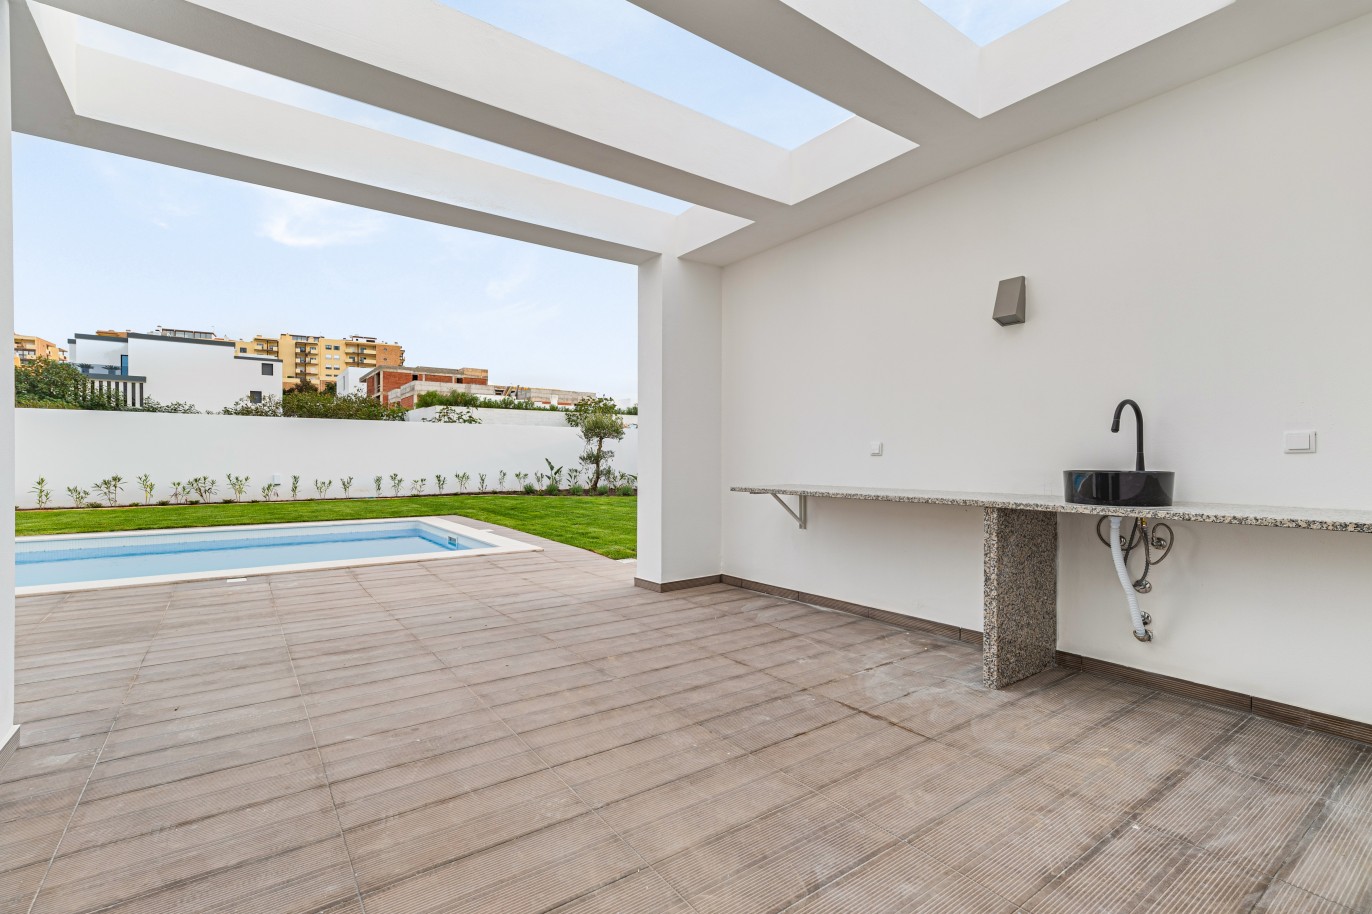 Moradia de 4 quartos, piscina, para venda, Porto de Mós, Lagos, Algarve_243632